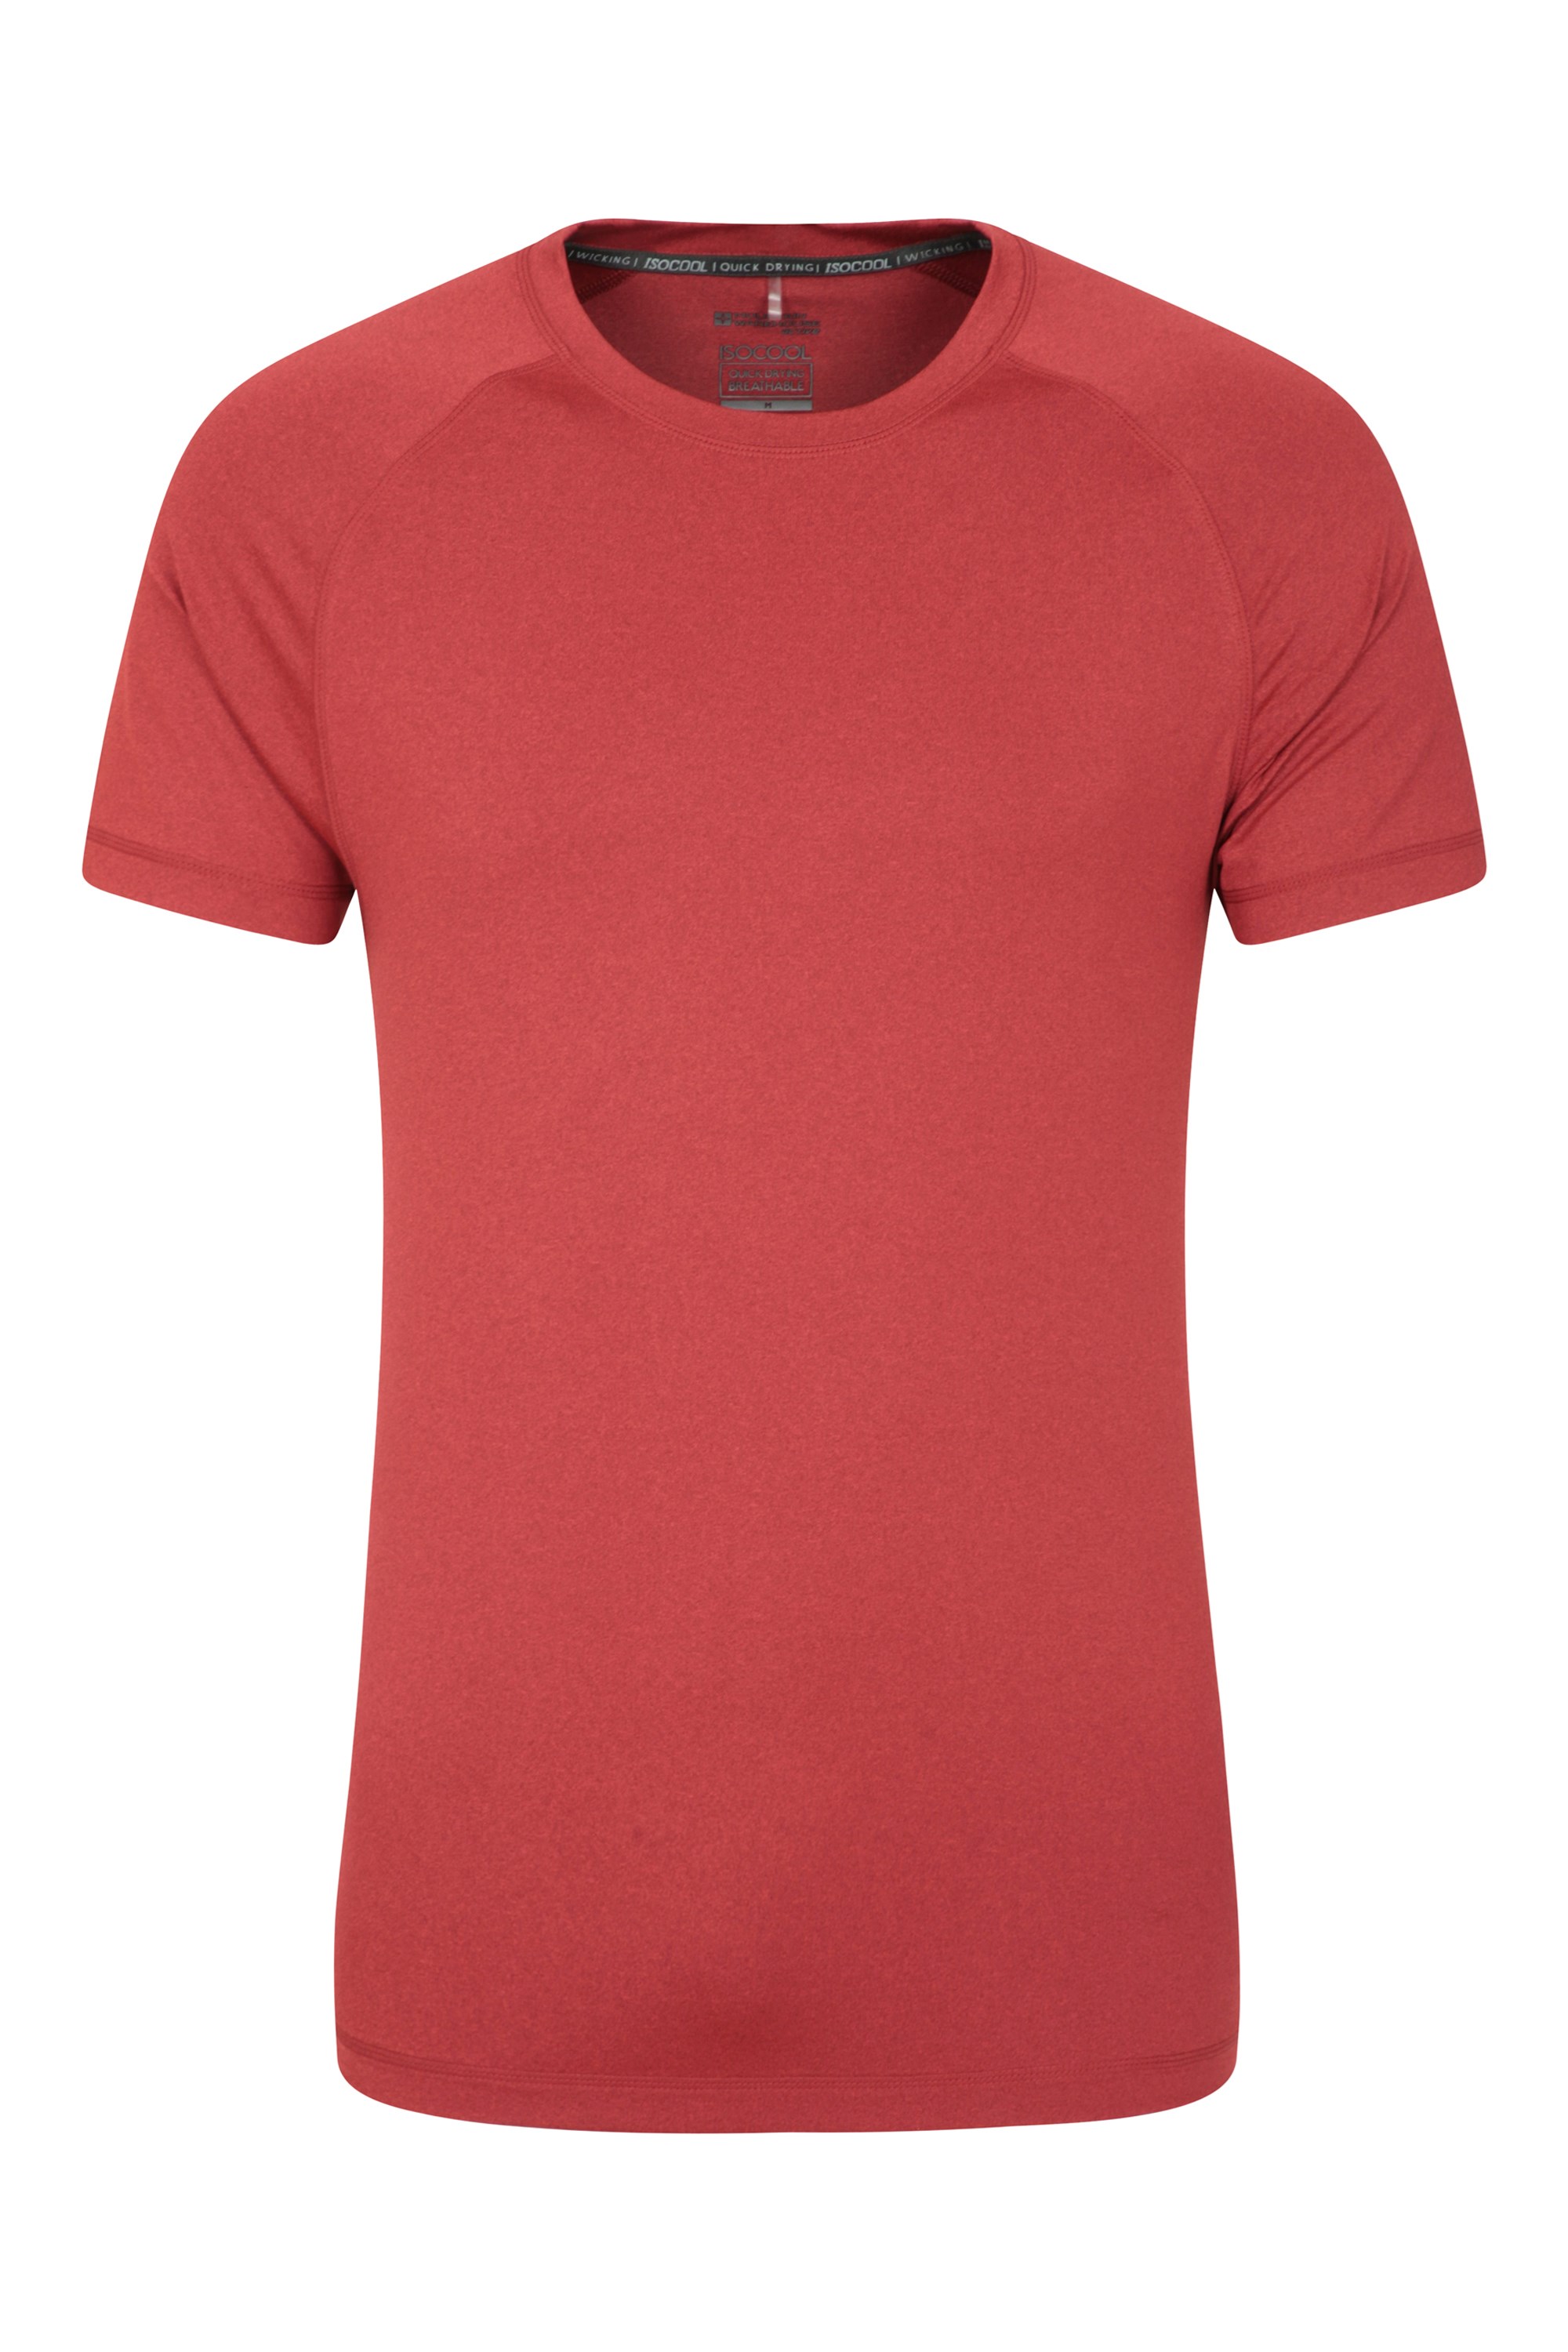 Agra Mens Melange T-Shirt - Red